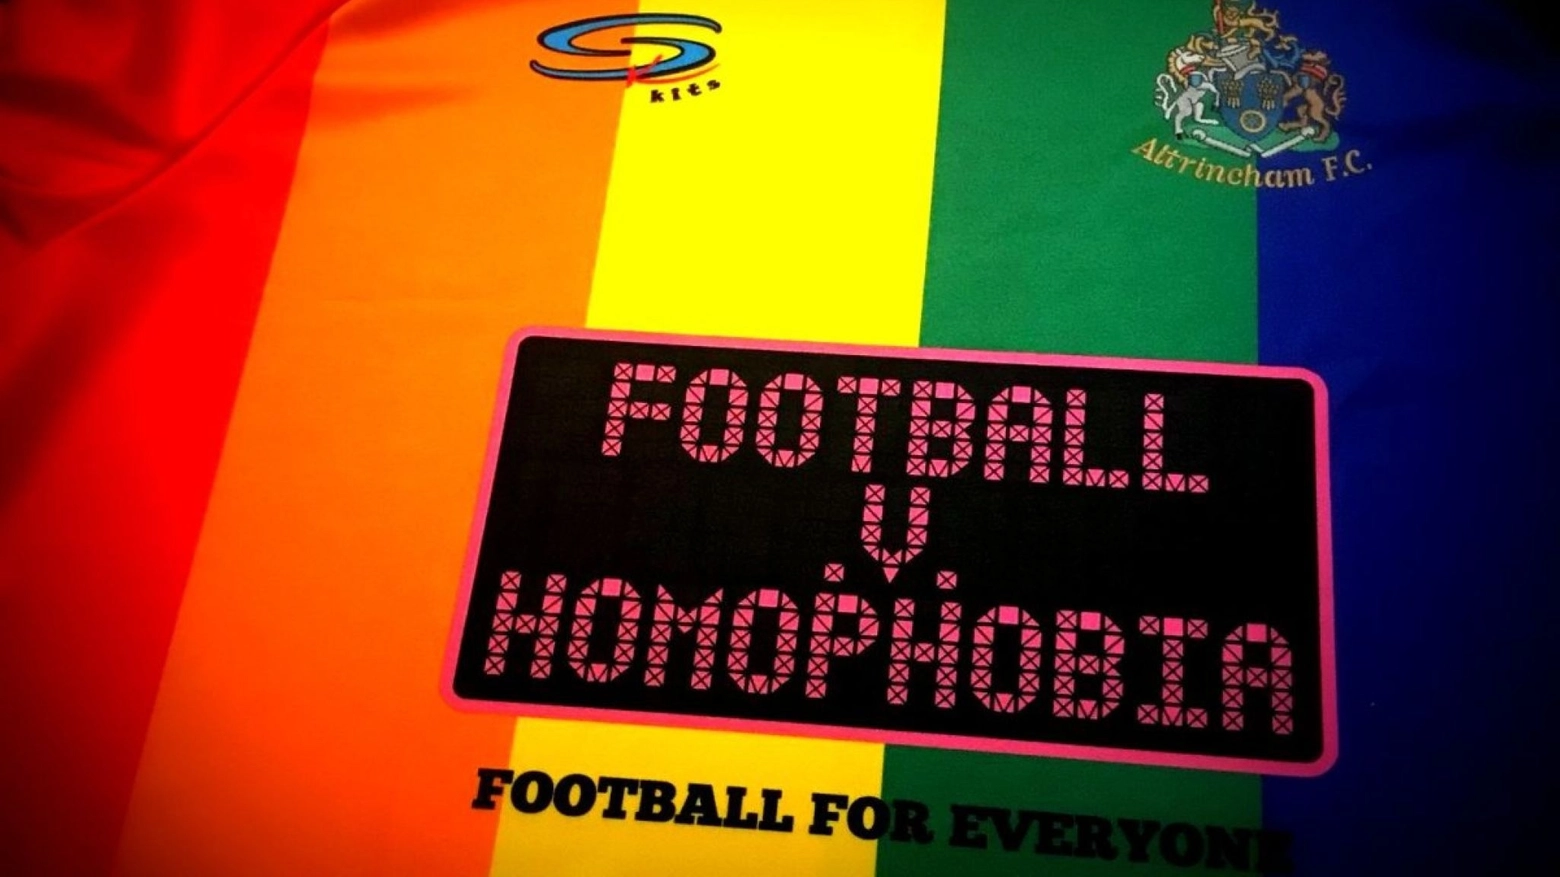 Molti ritengono che il calcio professionistico nel Paese sia profondamente omofobo. Per il segretario di Stato Roth “Viviamo nell'era del matrimonio per tutti, è giunto il momento del coming out". Intanto l'Allianz Arena si illumina con i colori dell'arcobaleno